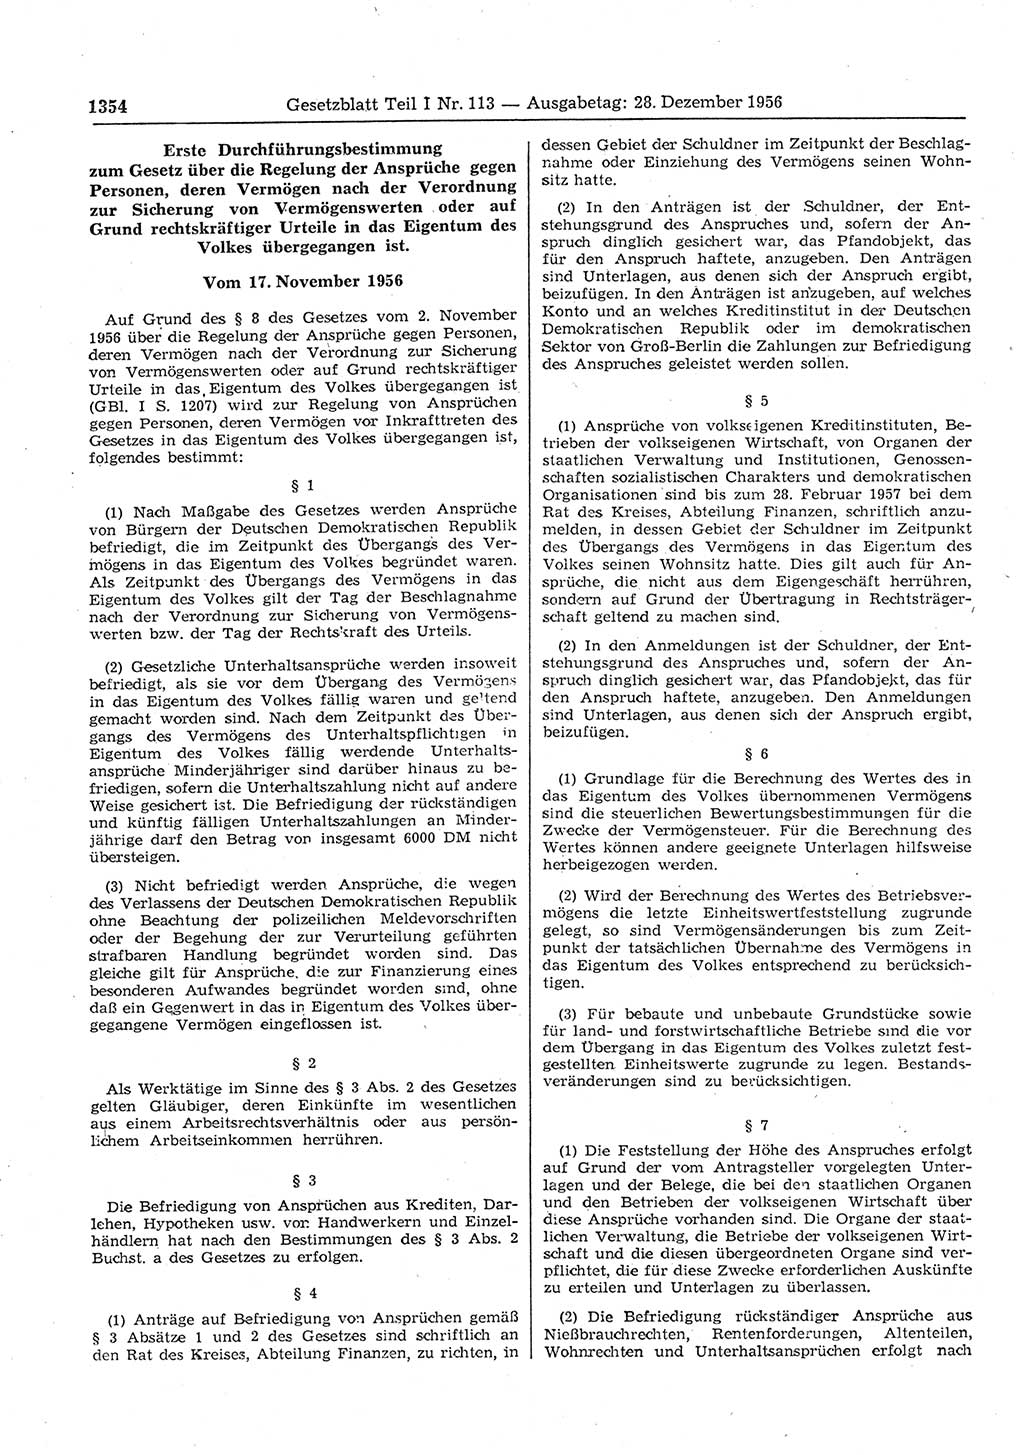 Gesetzblatt (GBl.) der Deutschen Demokratischen Republik (DDR) Teil Ⅰ 1956, Seite 1354 (GBl. DDR Ⅰ 1956, S. 1354)